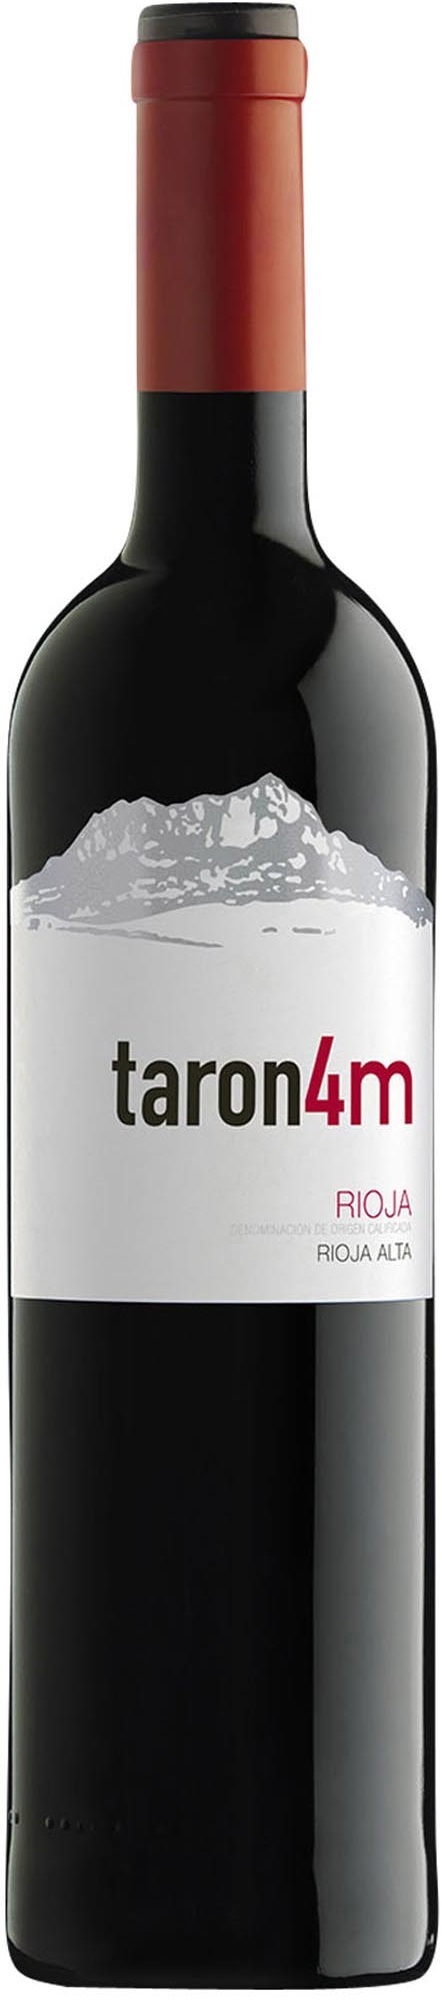 Taron 4M